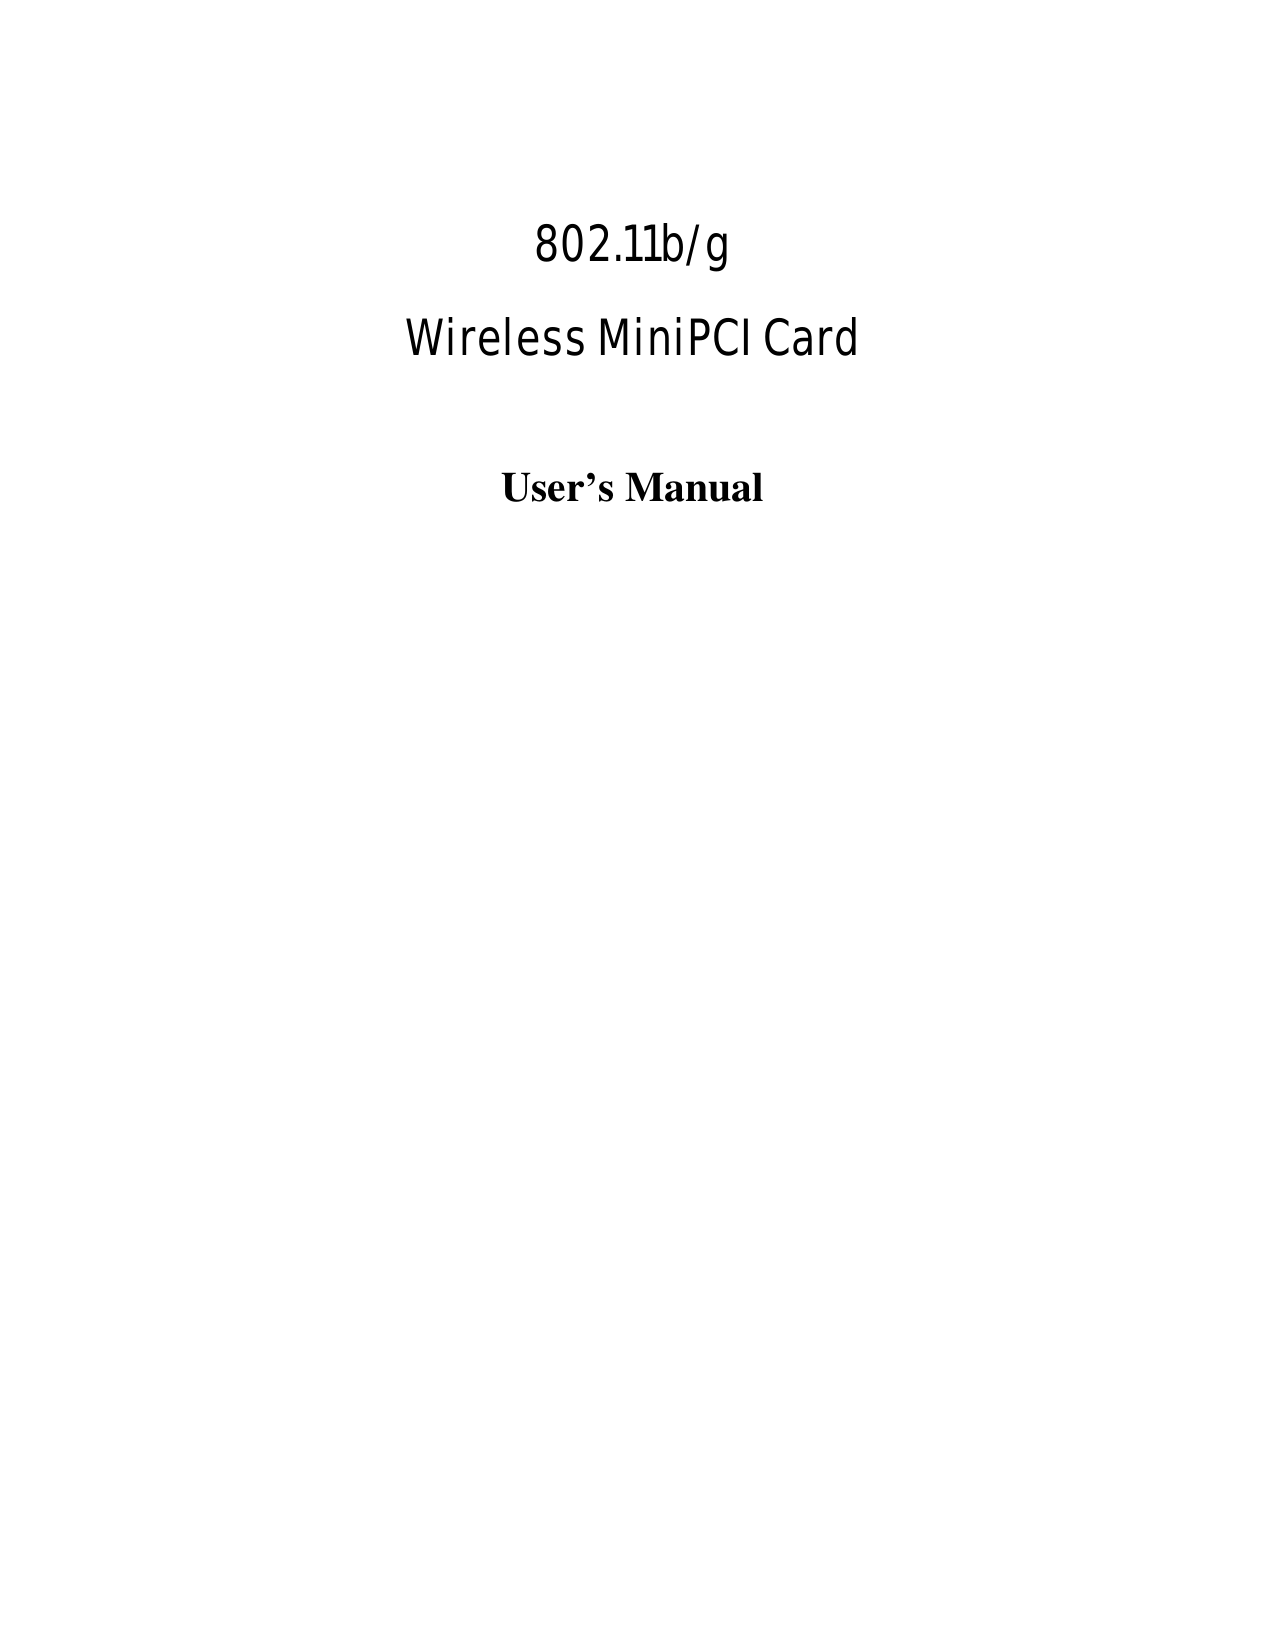     802.11b/g  Wireless MiniPCI Card  User’s Manual 